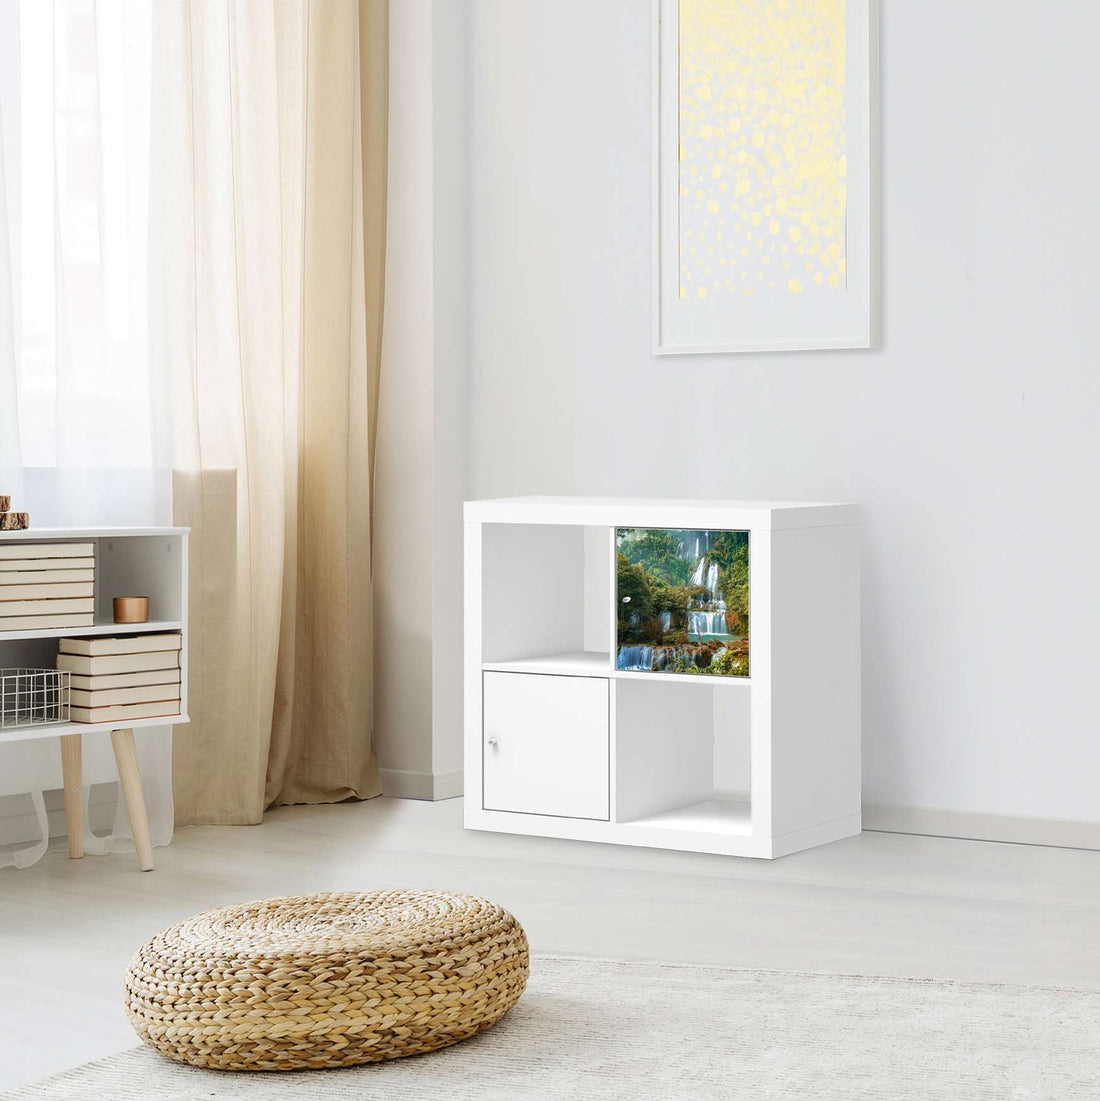 Selbstklebende Folie Rainforest - IKEA Kallax Regal 1 Türe - Wohnzimmer